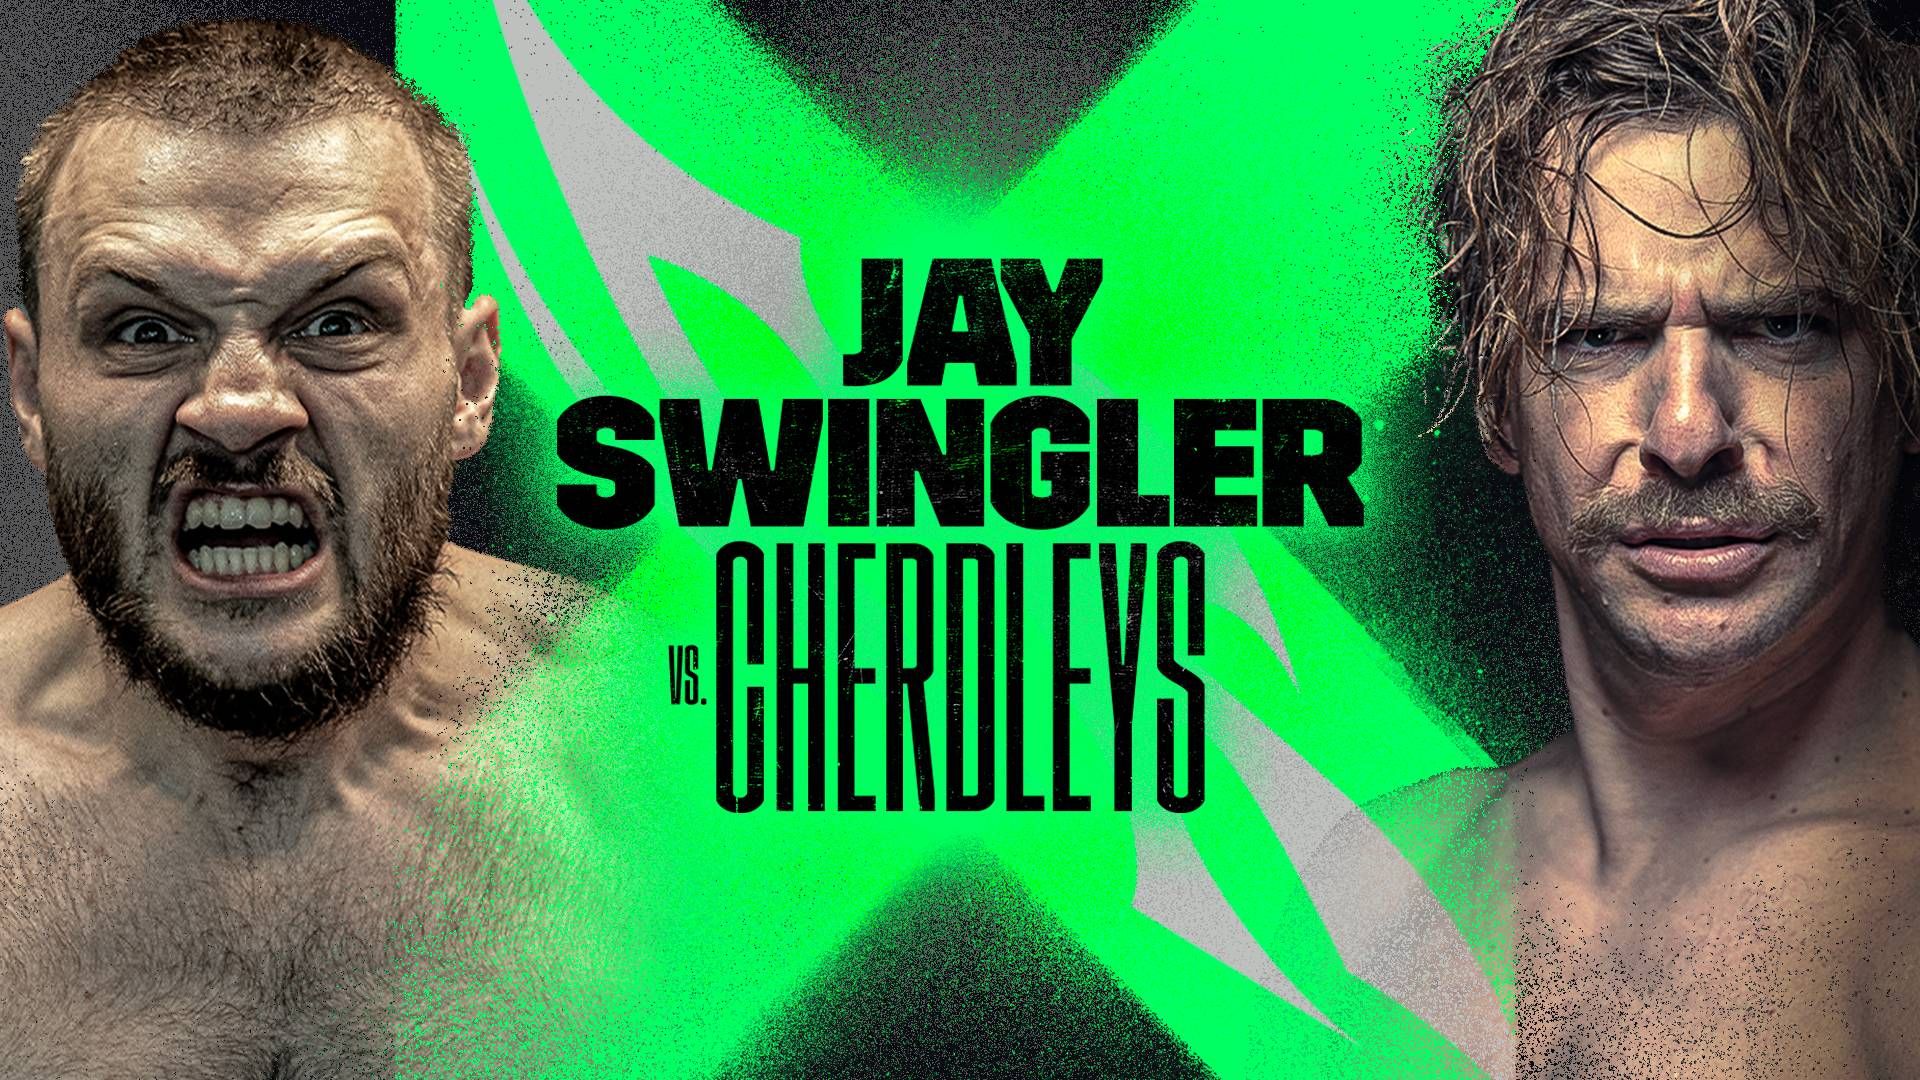 Promo art for the Jay Swingler vs Cherdleys fight by DAZN